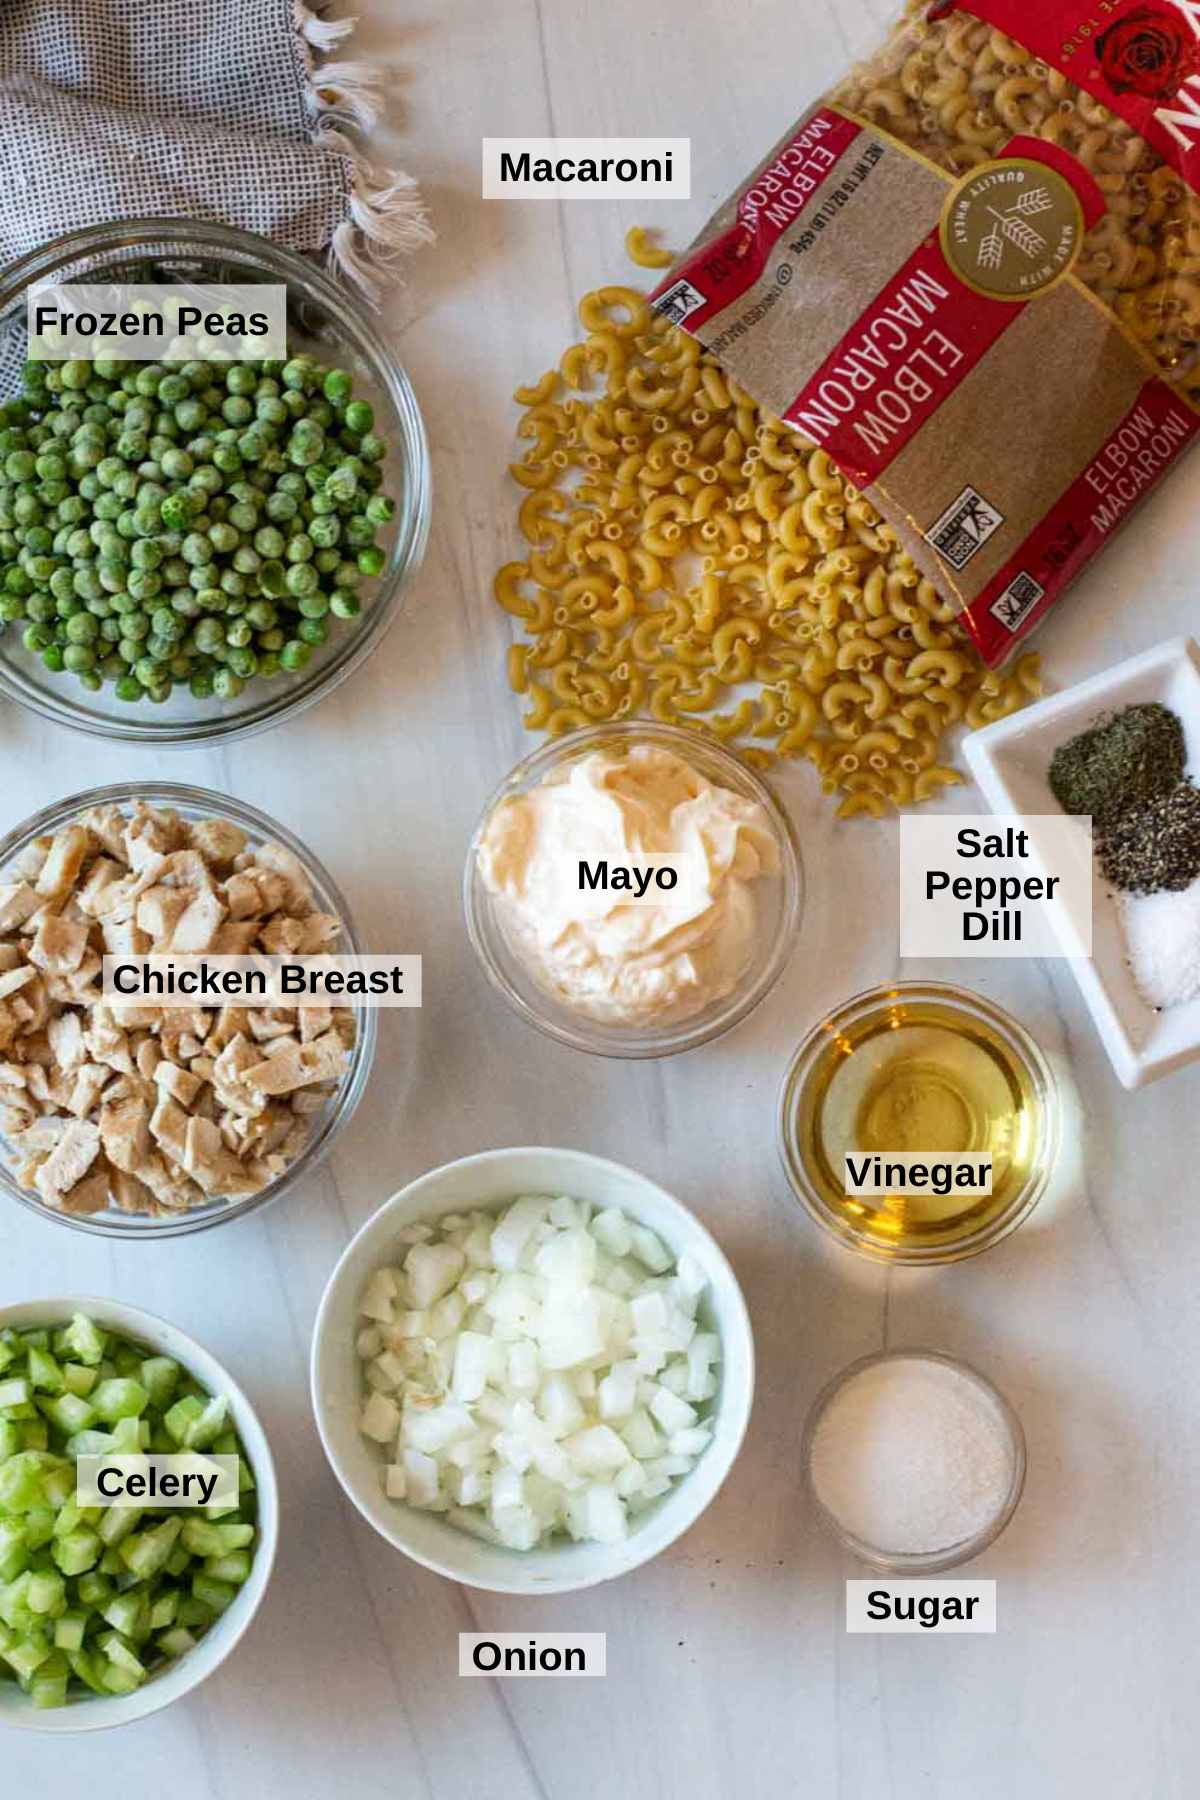 Ingredients to make macaroni chicken salad.